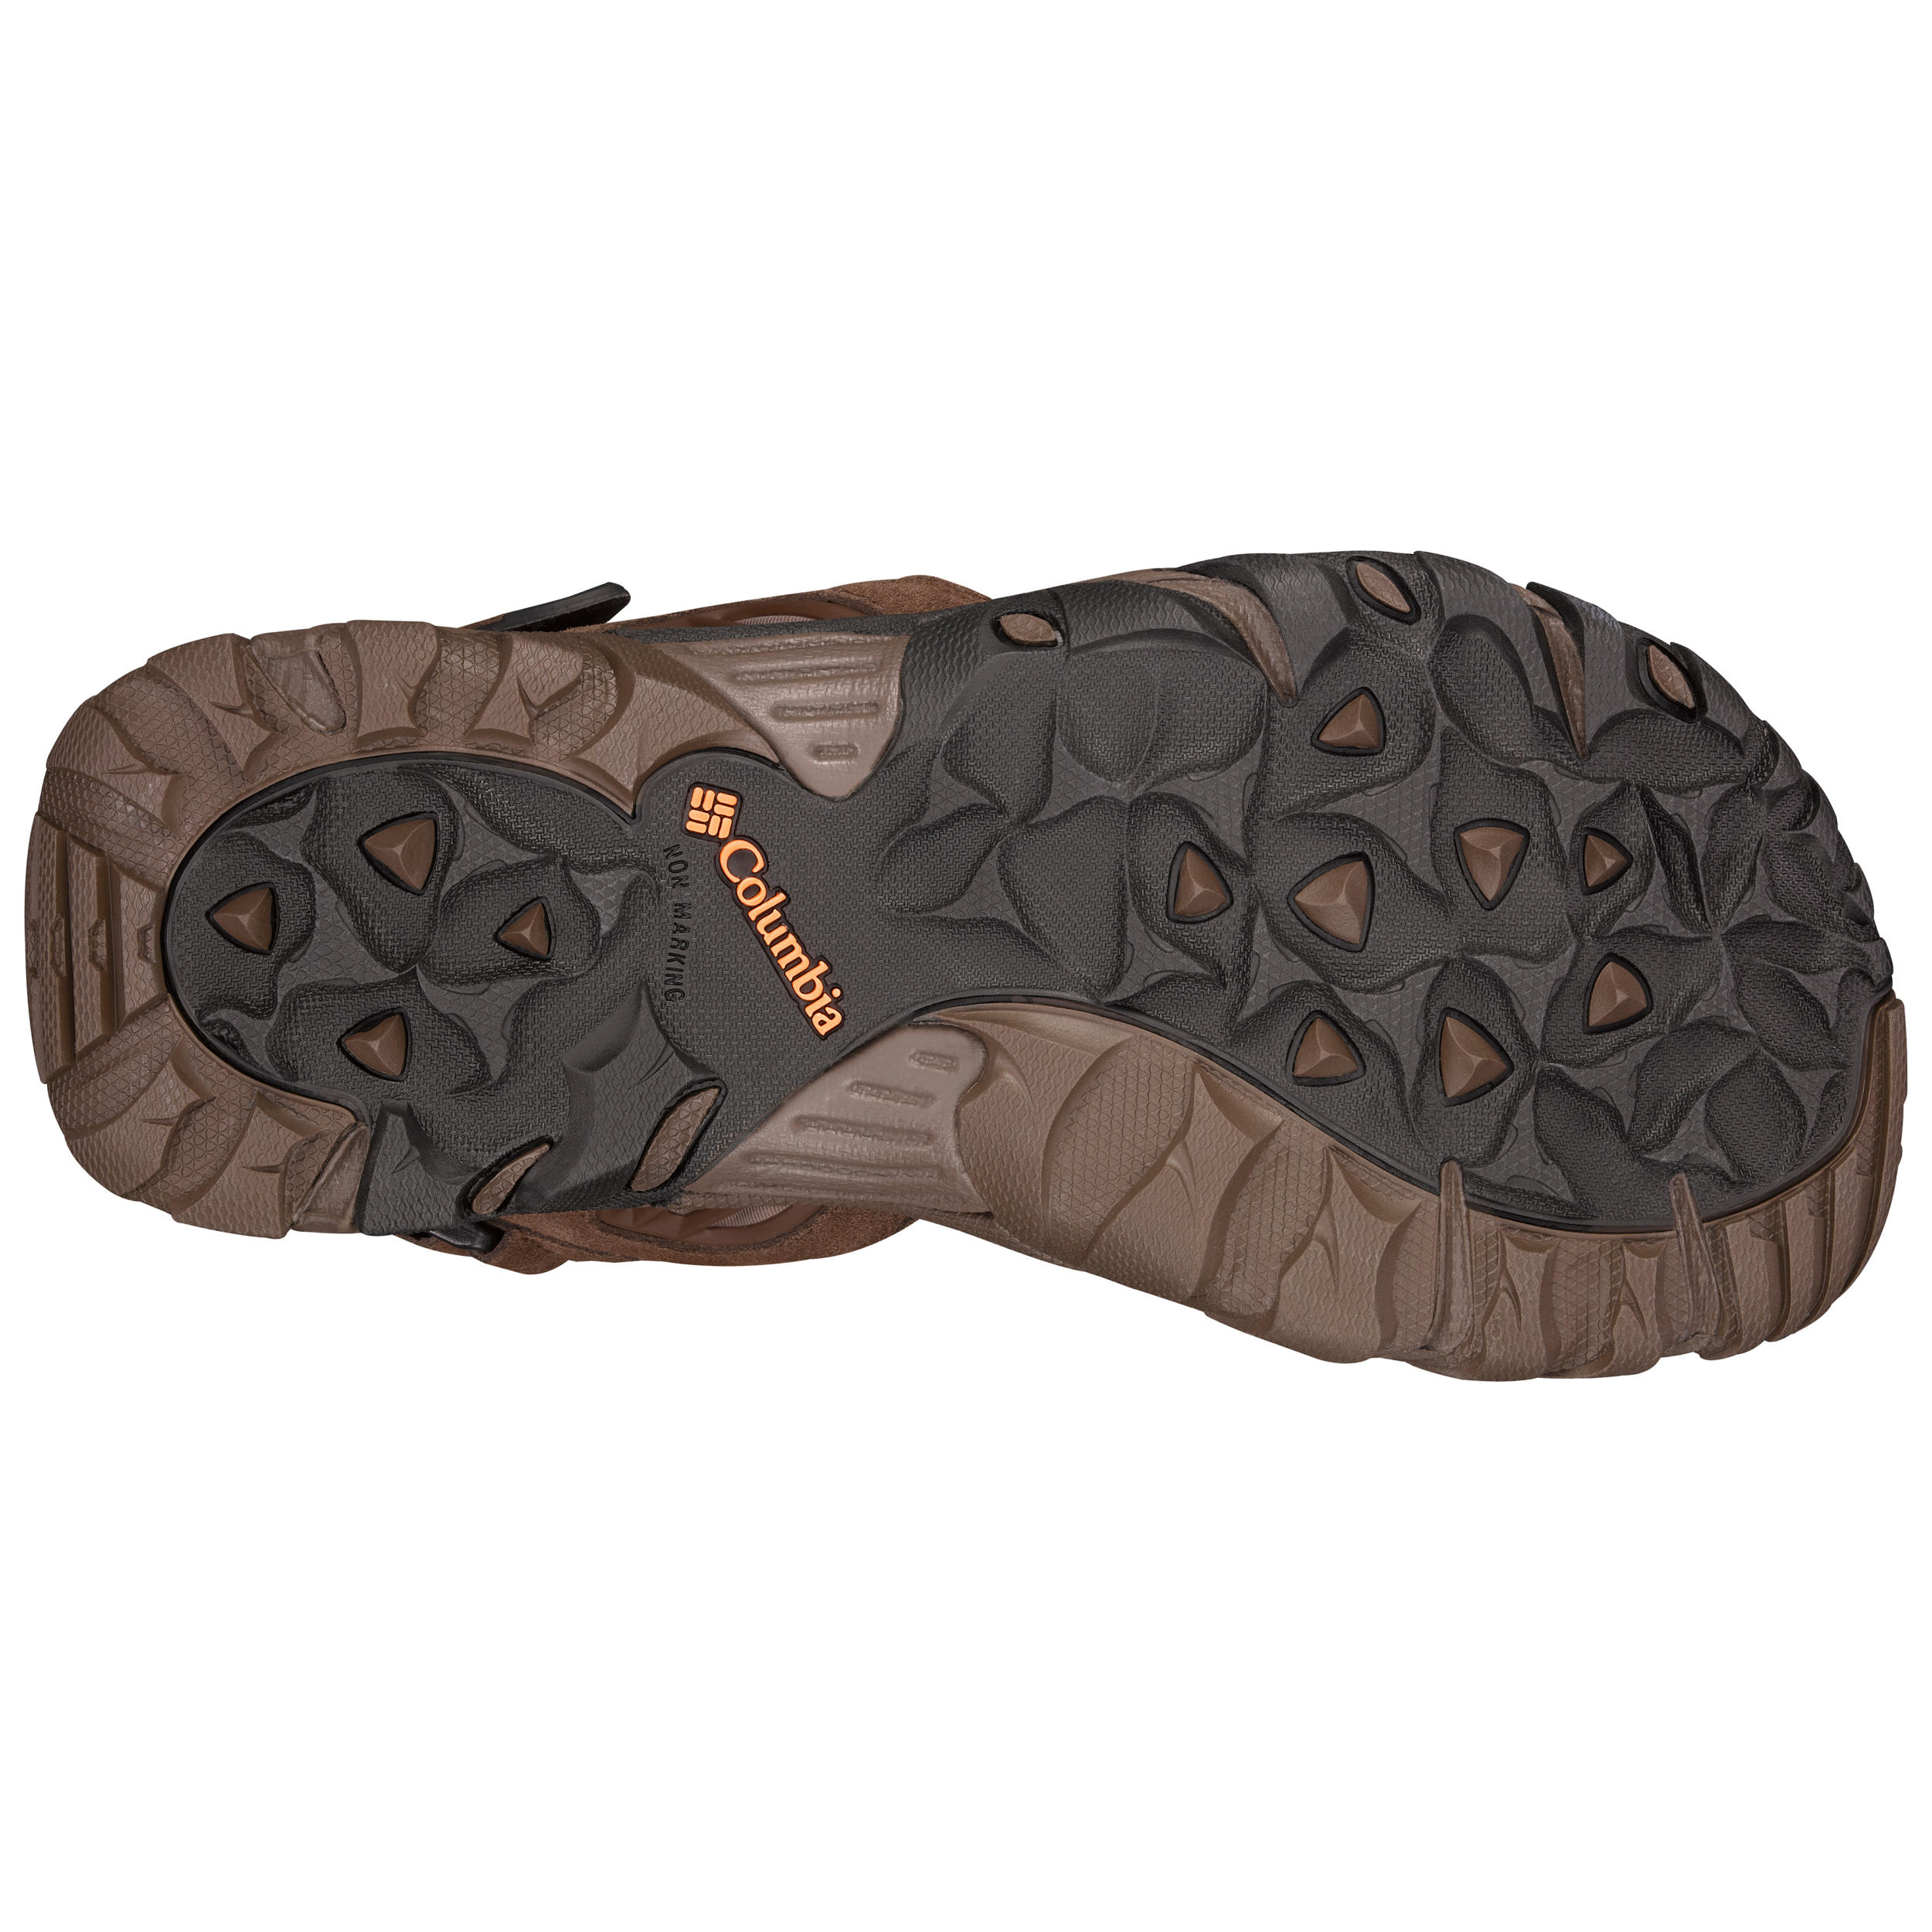 Men's walking sandals - Columbia Ridge Venture - Brown 6/6